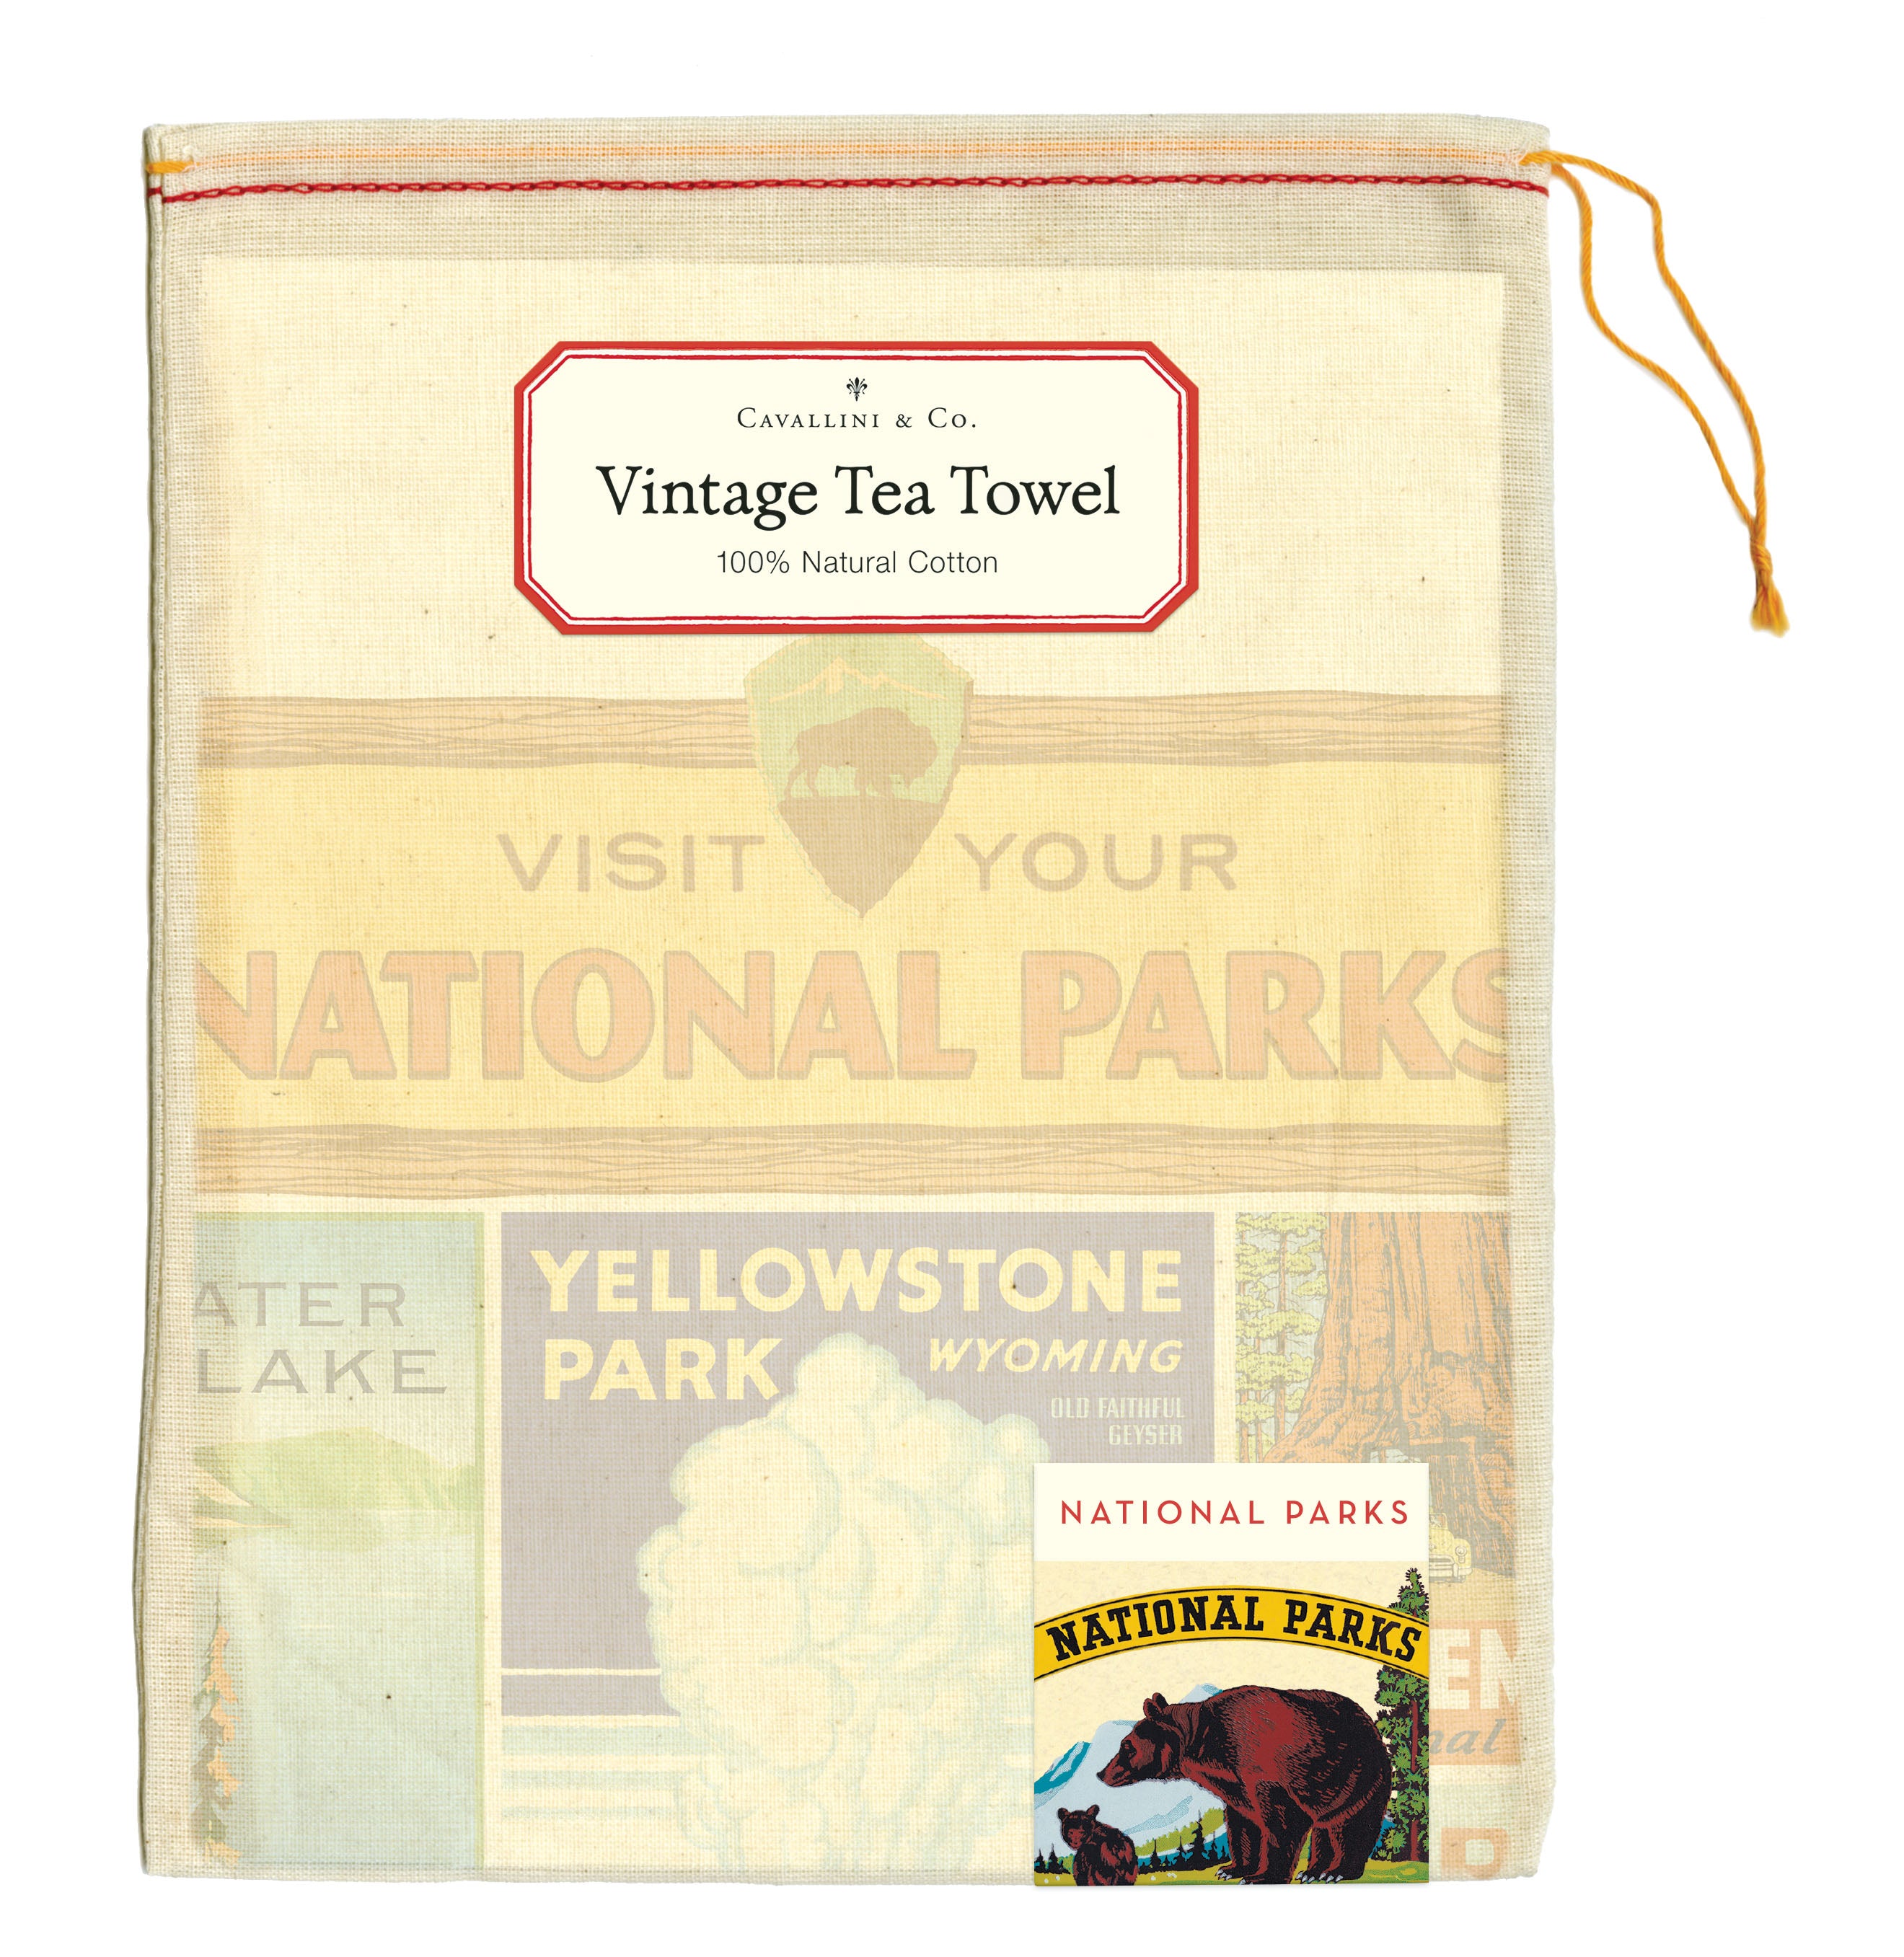 Cavallini & Co. National Parks Cotton Tea Towel package